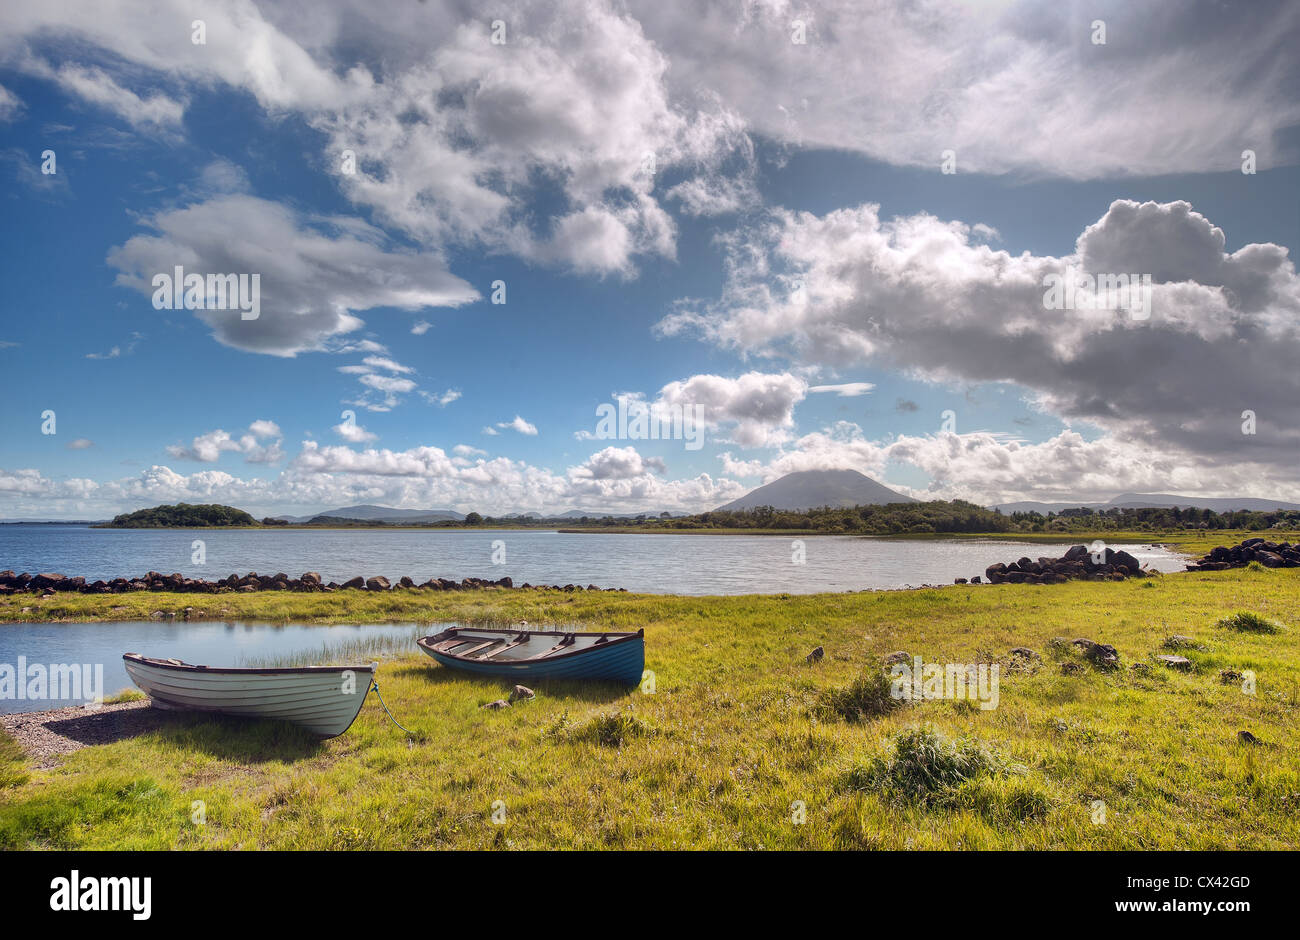 Un día soleado con algunos botes de Lough conn en el condado de Mayo, Irlanda con la icónica montaña Nephin Beg en segundo plano Foto de stock